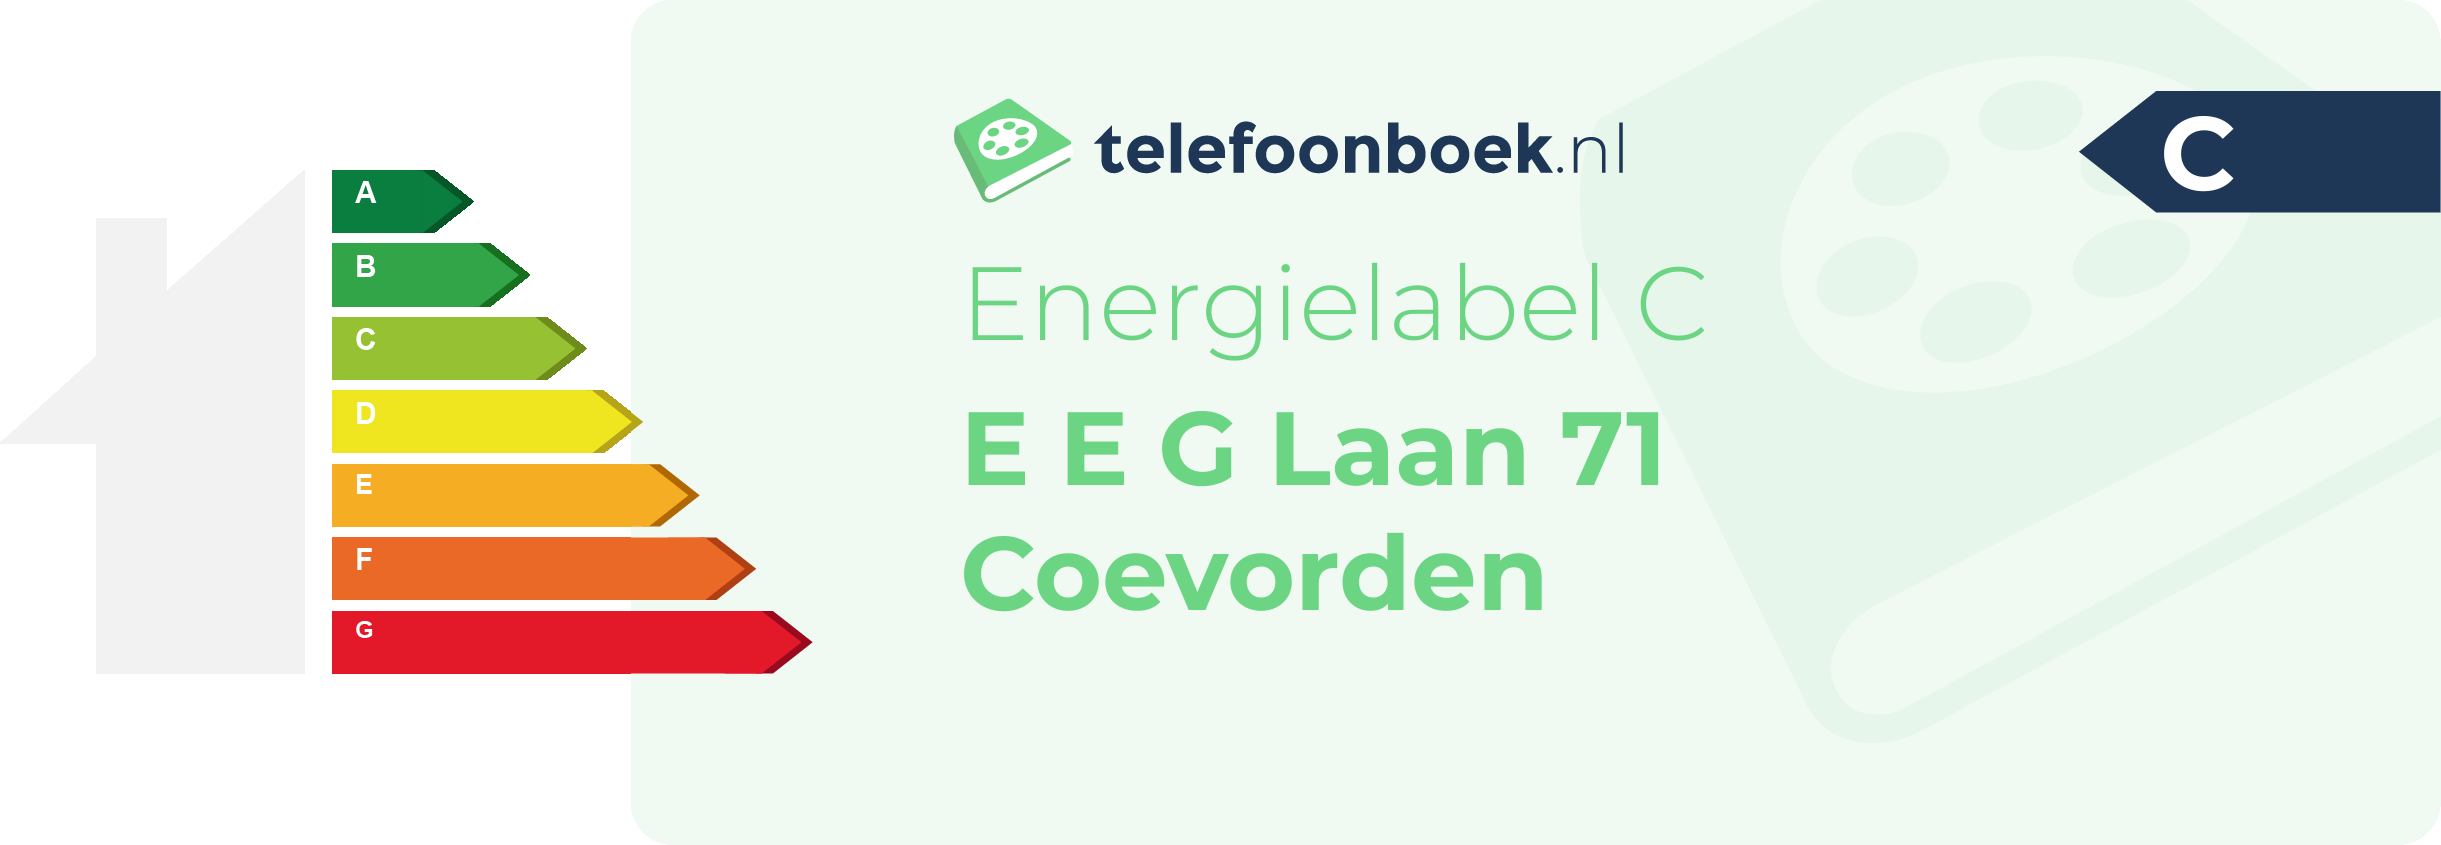 Energielabel E E G Laan 71 Coevorden